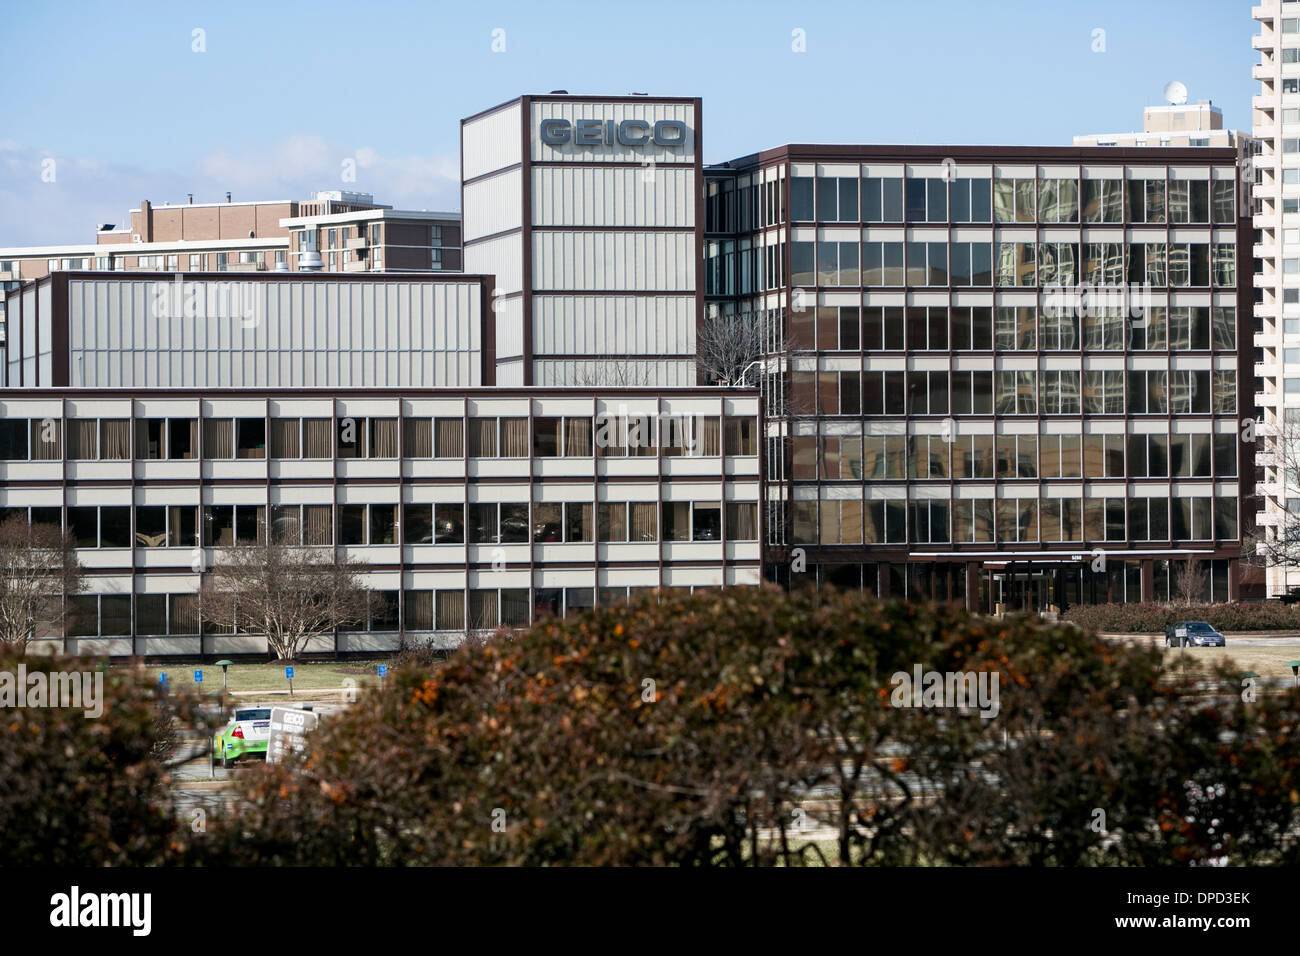 La sede GEICO, noto anche come il governo dipendente compagnia di assicurazioni di Chevy Chase, Maryland. Foto Stock